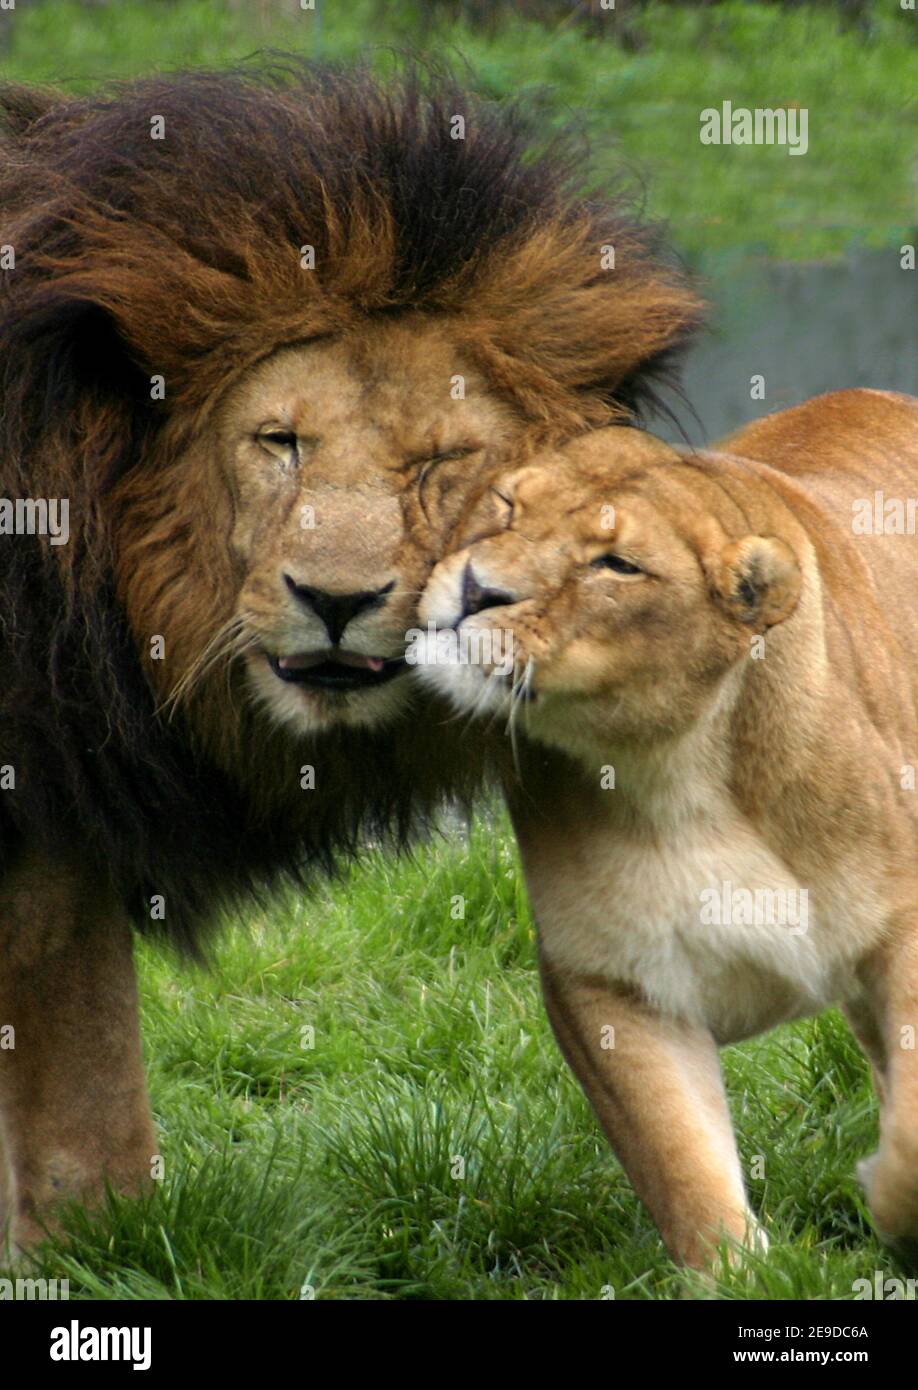 lion (Panthera leo), male lion and lioness smouching Stock Photo